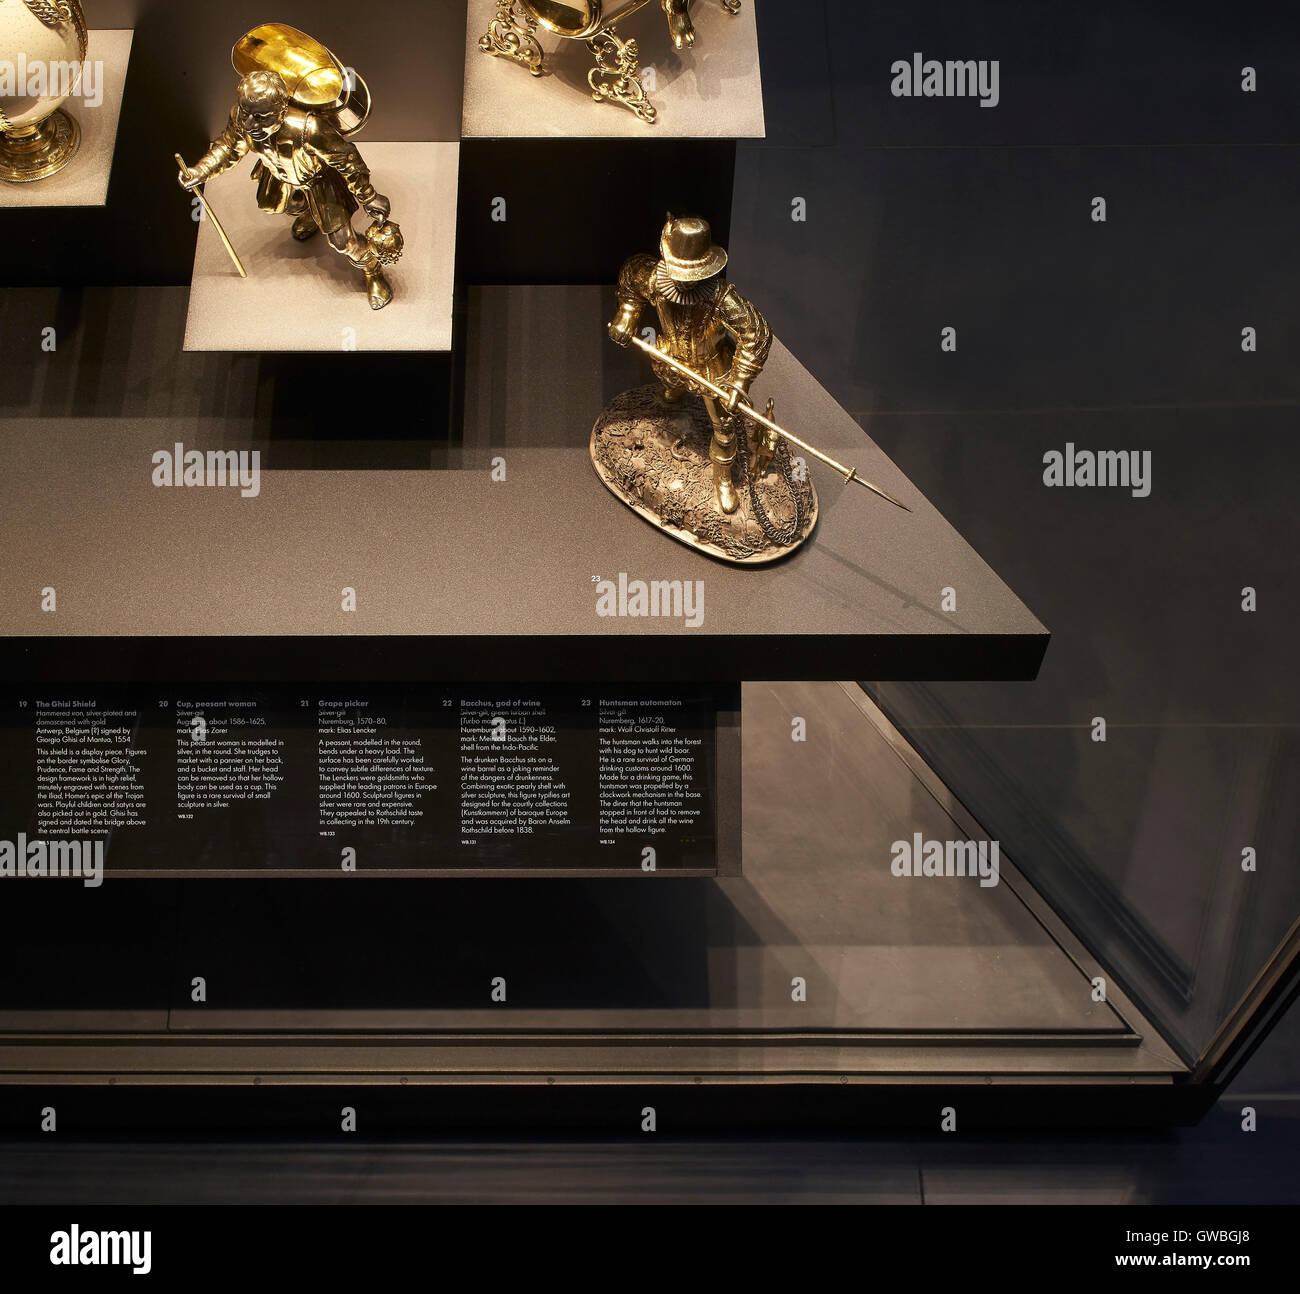 Detail von vergoldetem Silber zahlen. Waddesdon Vermächtnis Galerie im British Museum, London, Vereinigtes Königreich. Architekt: Stanton Williams, 2015. Stockfoto